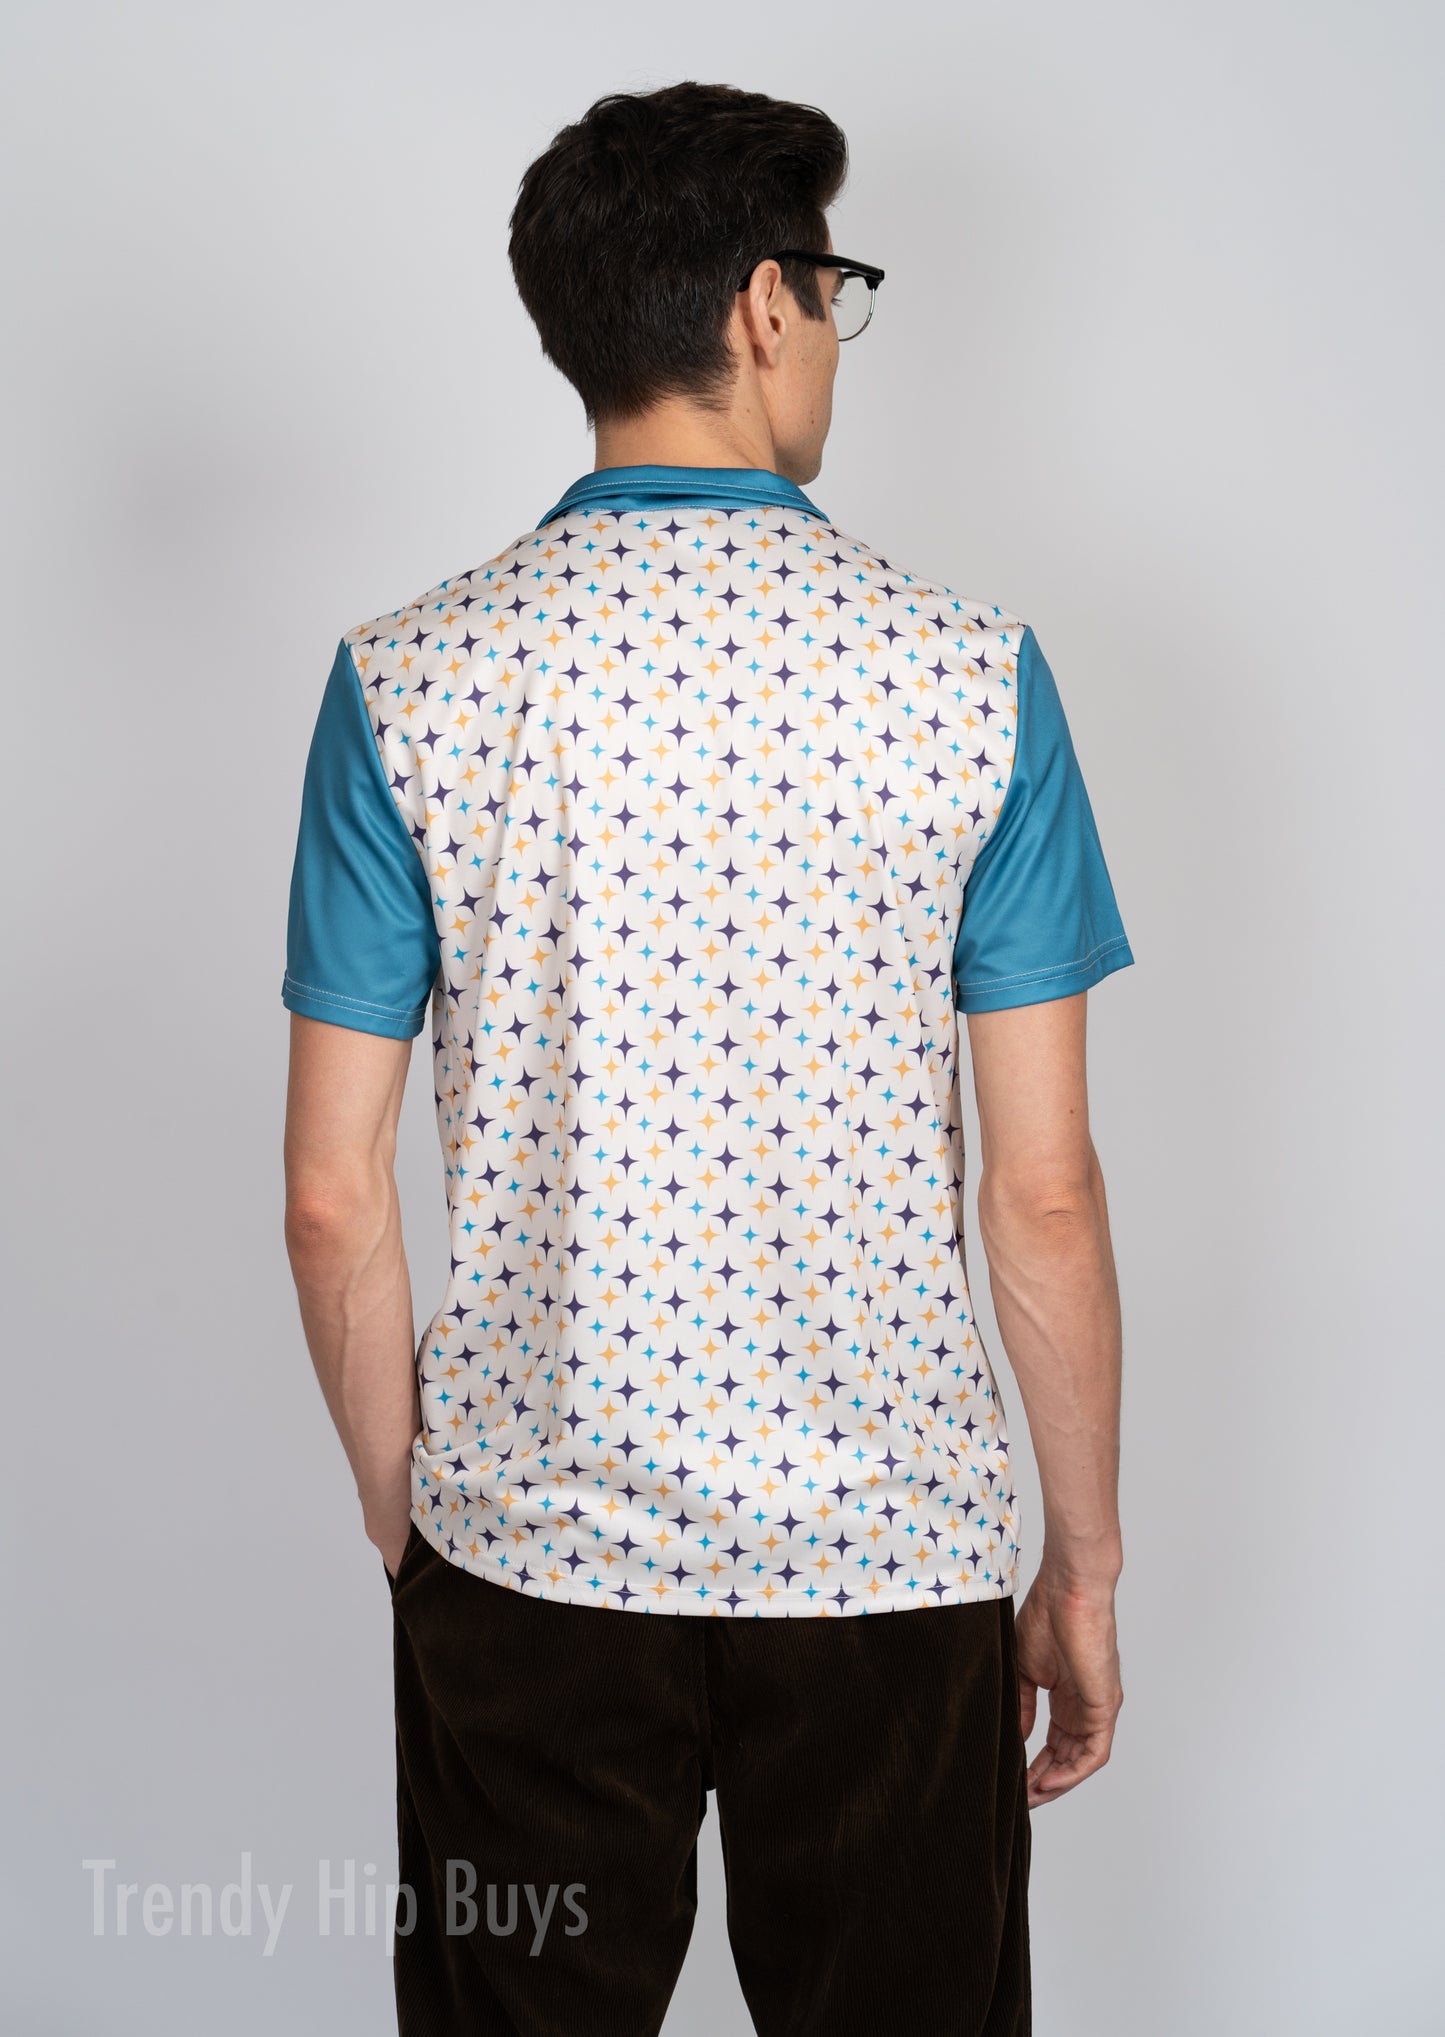 Poloshirt Herren, Herren Poloshirt, Retro Shirt Herren, 50er 60er Jahre Stil Shirt, Mid Century Shirt Style, Retro Poloshirt, Retro Türkis Shirt